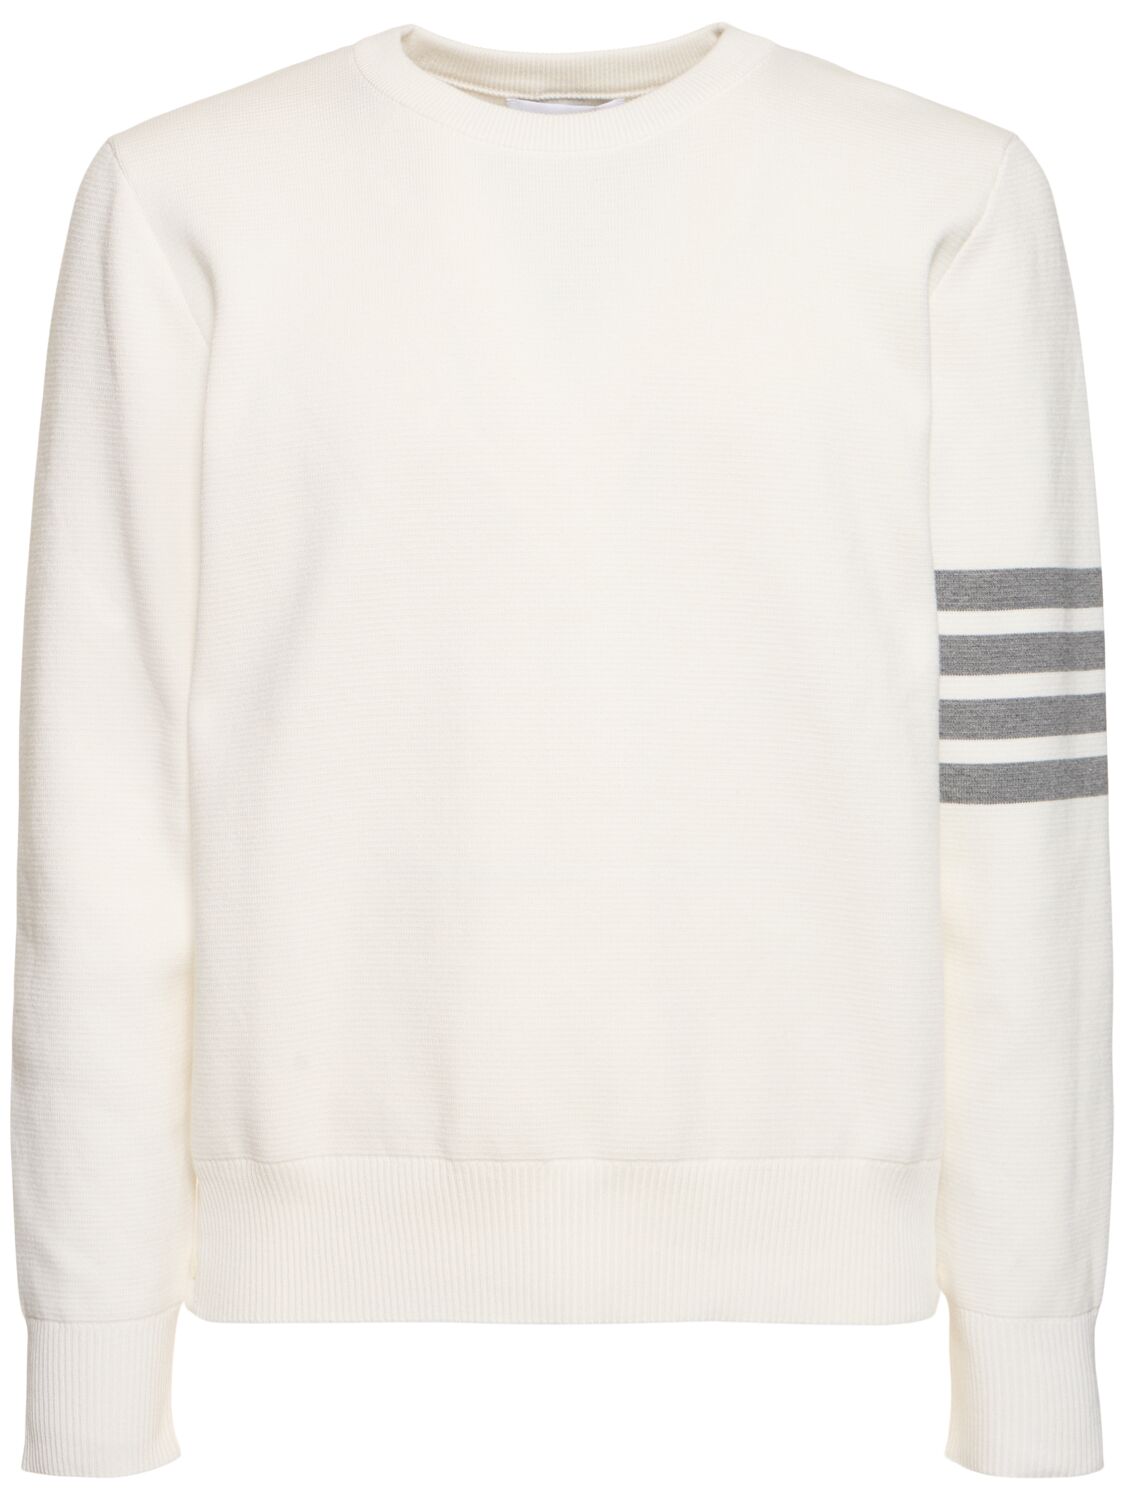 Thom Browne Milano Stitch Cotton Crewneck Sweater In White